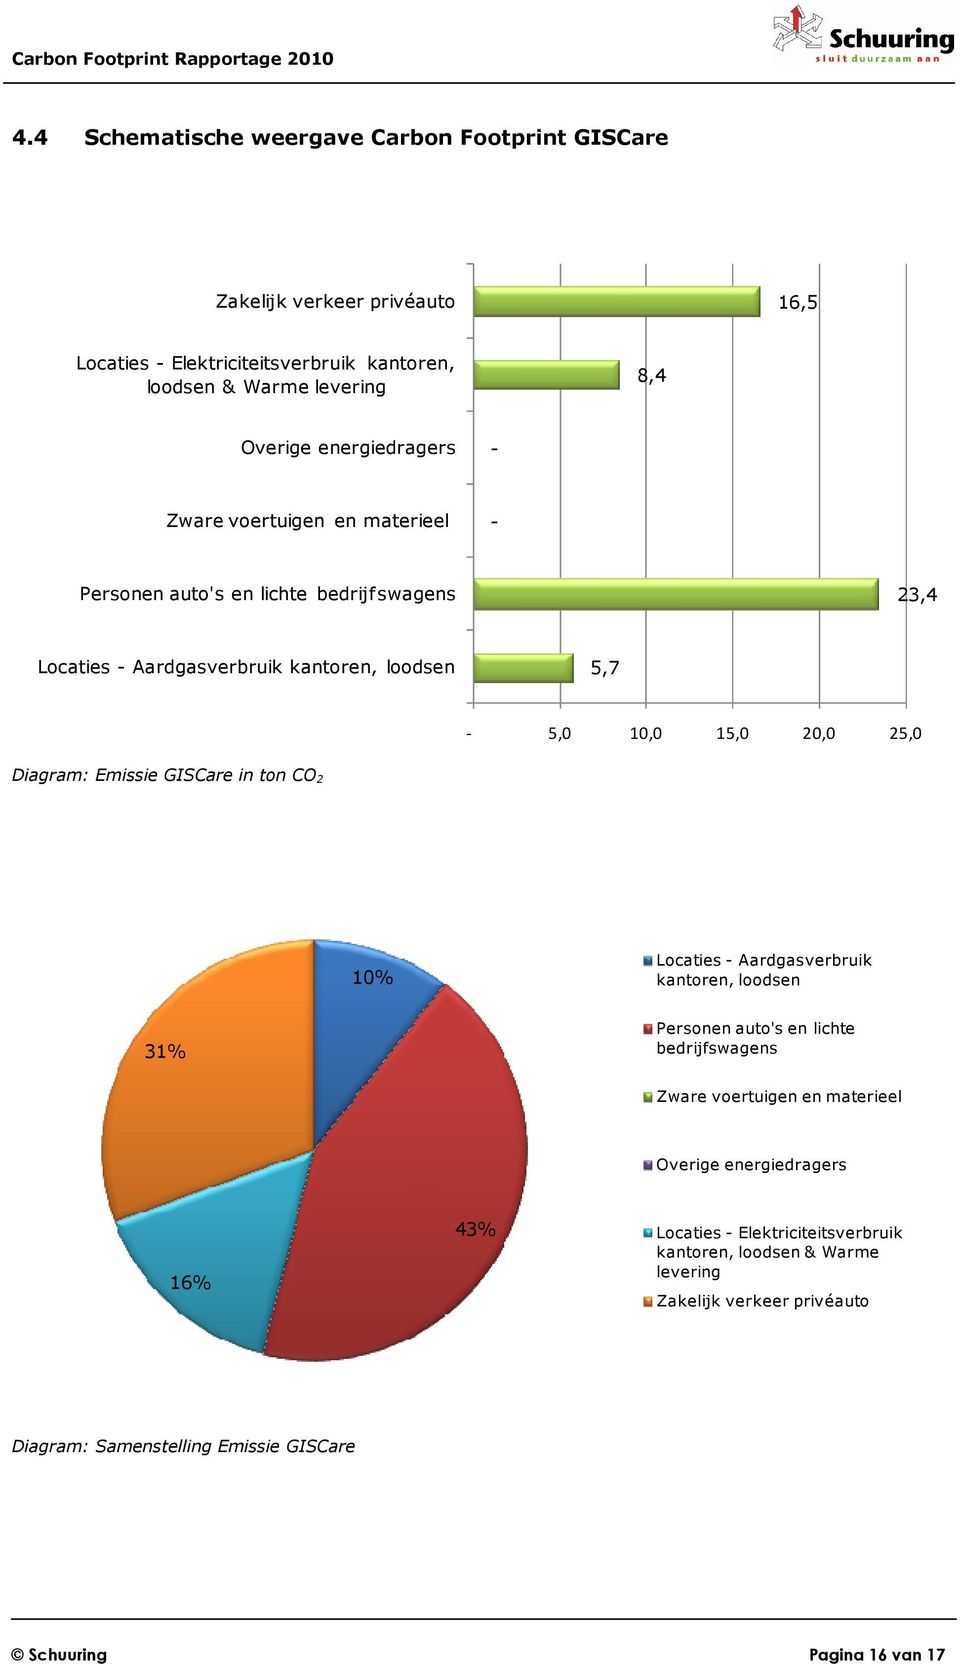 Diagram: Emissie GISCare in ton CO 2 10% Locaties - Aardgasverbruik kantoren, loodsen 31% Personen auto's en lichte bedrijfswagens Zware voertuigen en materieel Overige